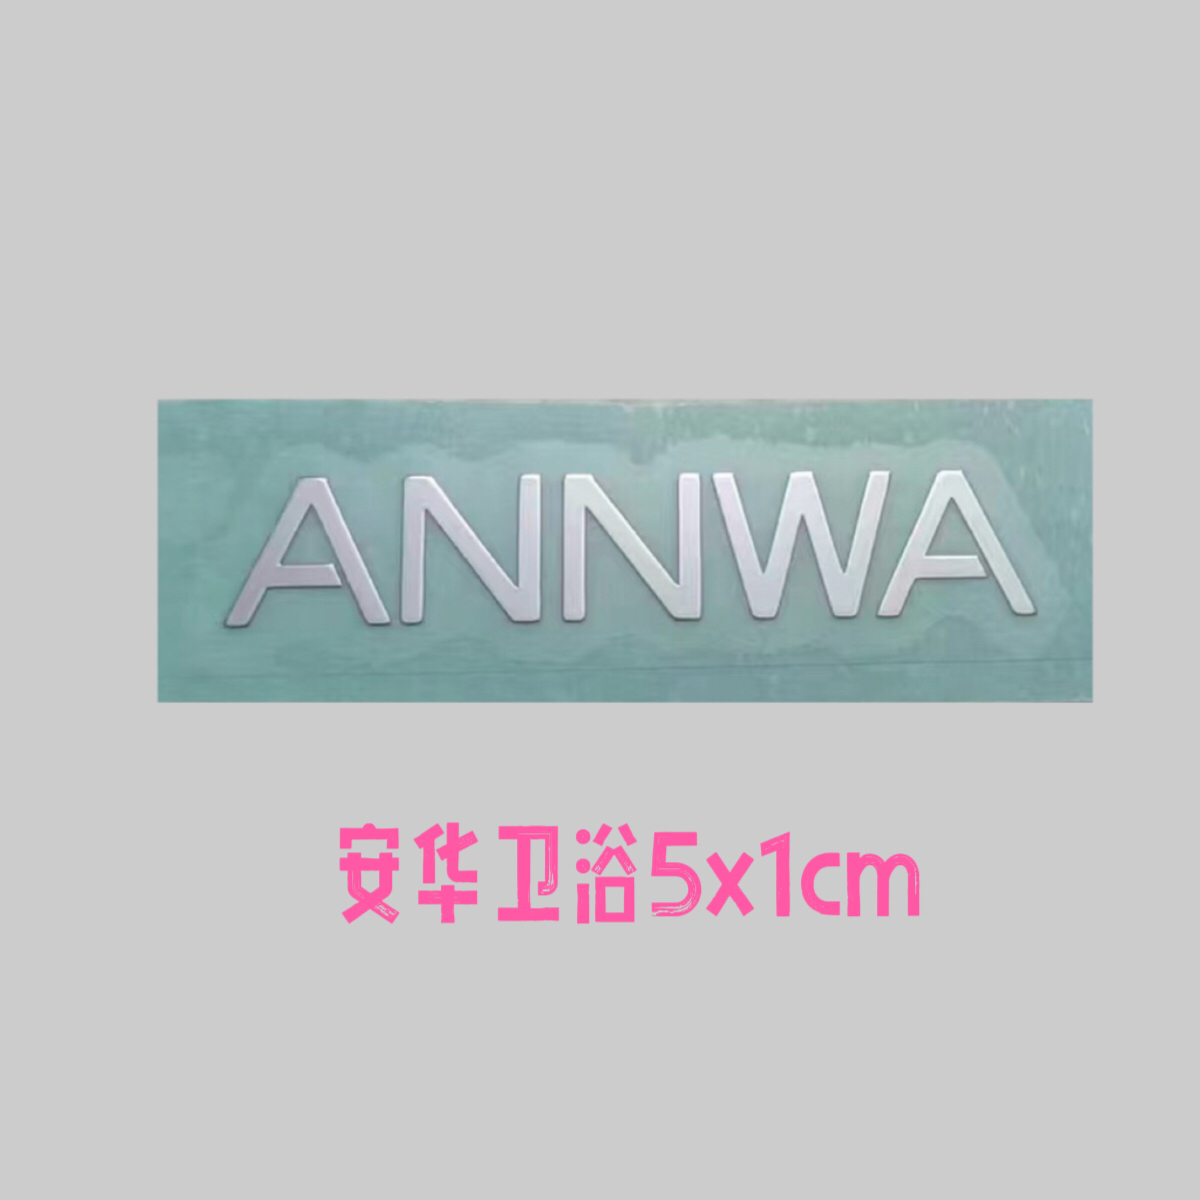 纯镍金属带背胶安华ANNWA标贴卫浴橱柜标转印贴logo标签遮痕商标